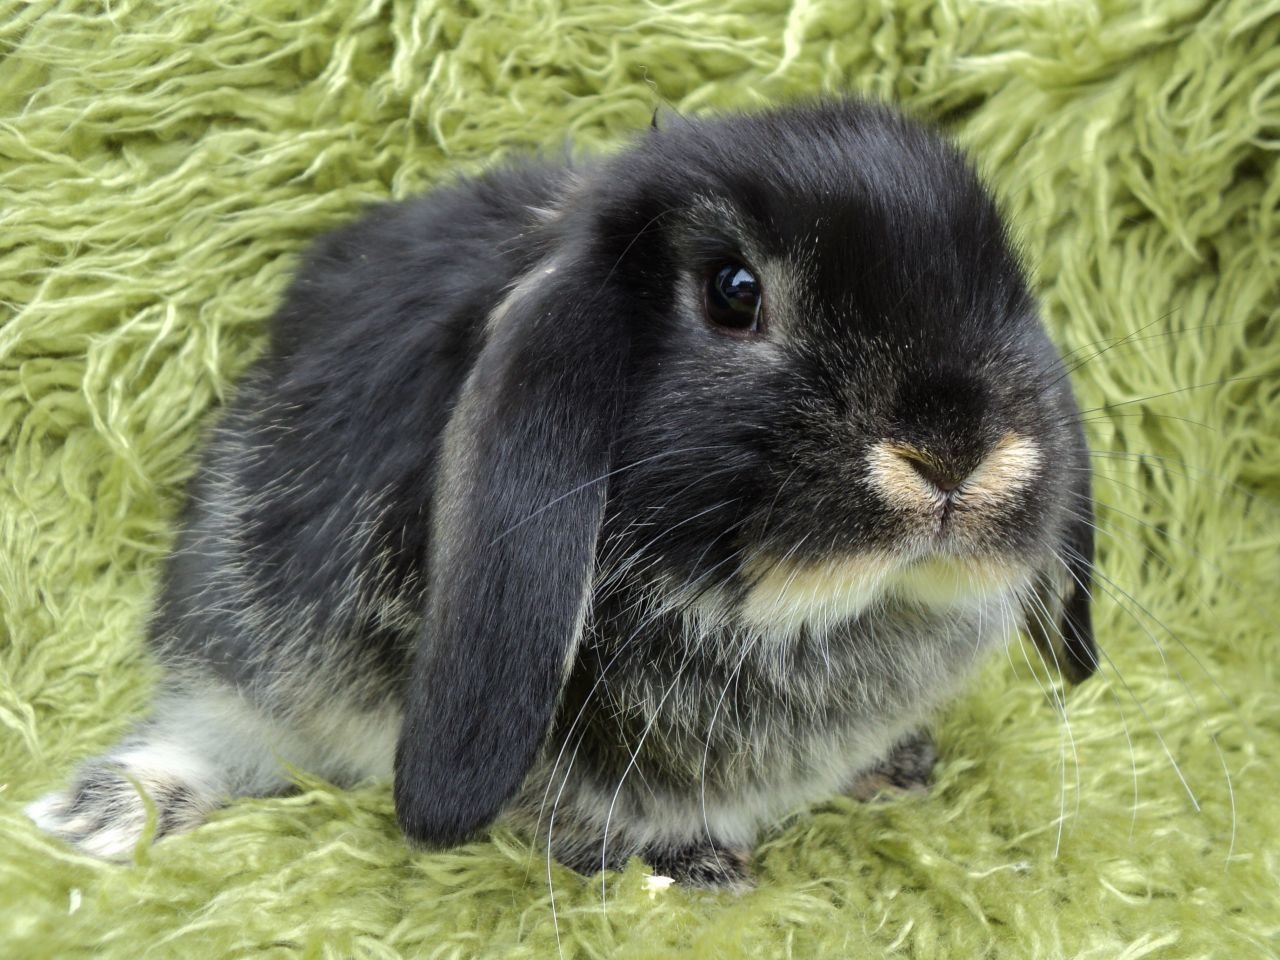 Comment choisir et acheter un lapin hollandais sur un tableau d'affichage en Israël